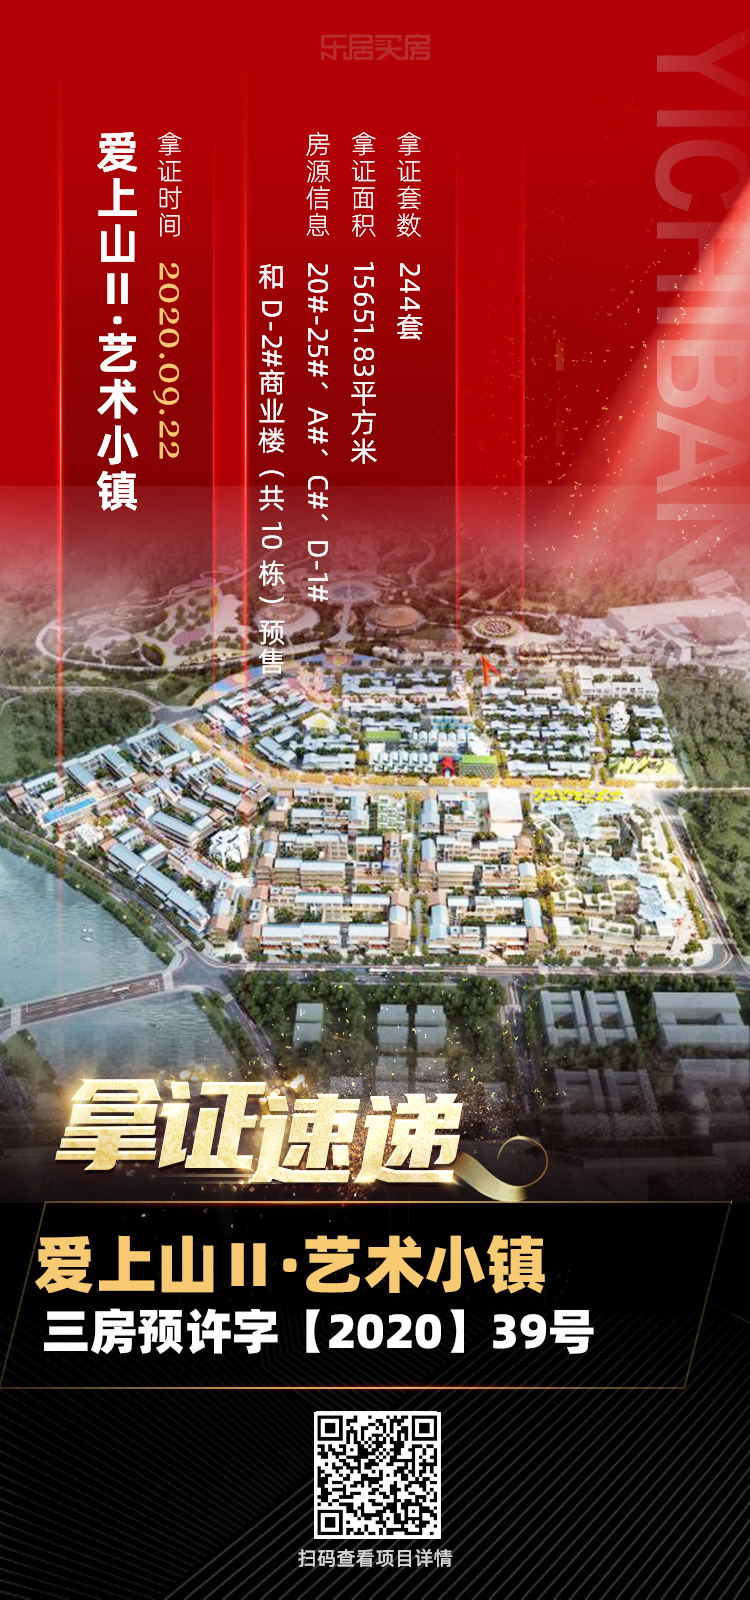 拿证速递|爱上山Ⅱ·艺术小镇取得最新预售证 244套房源入市